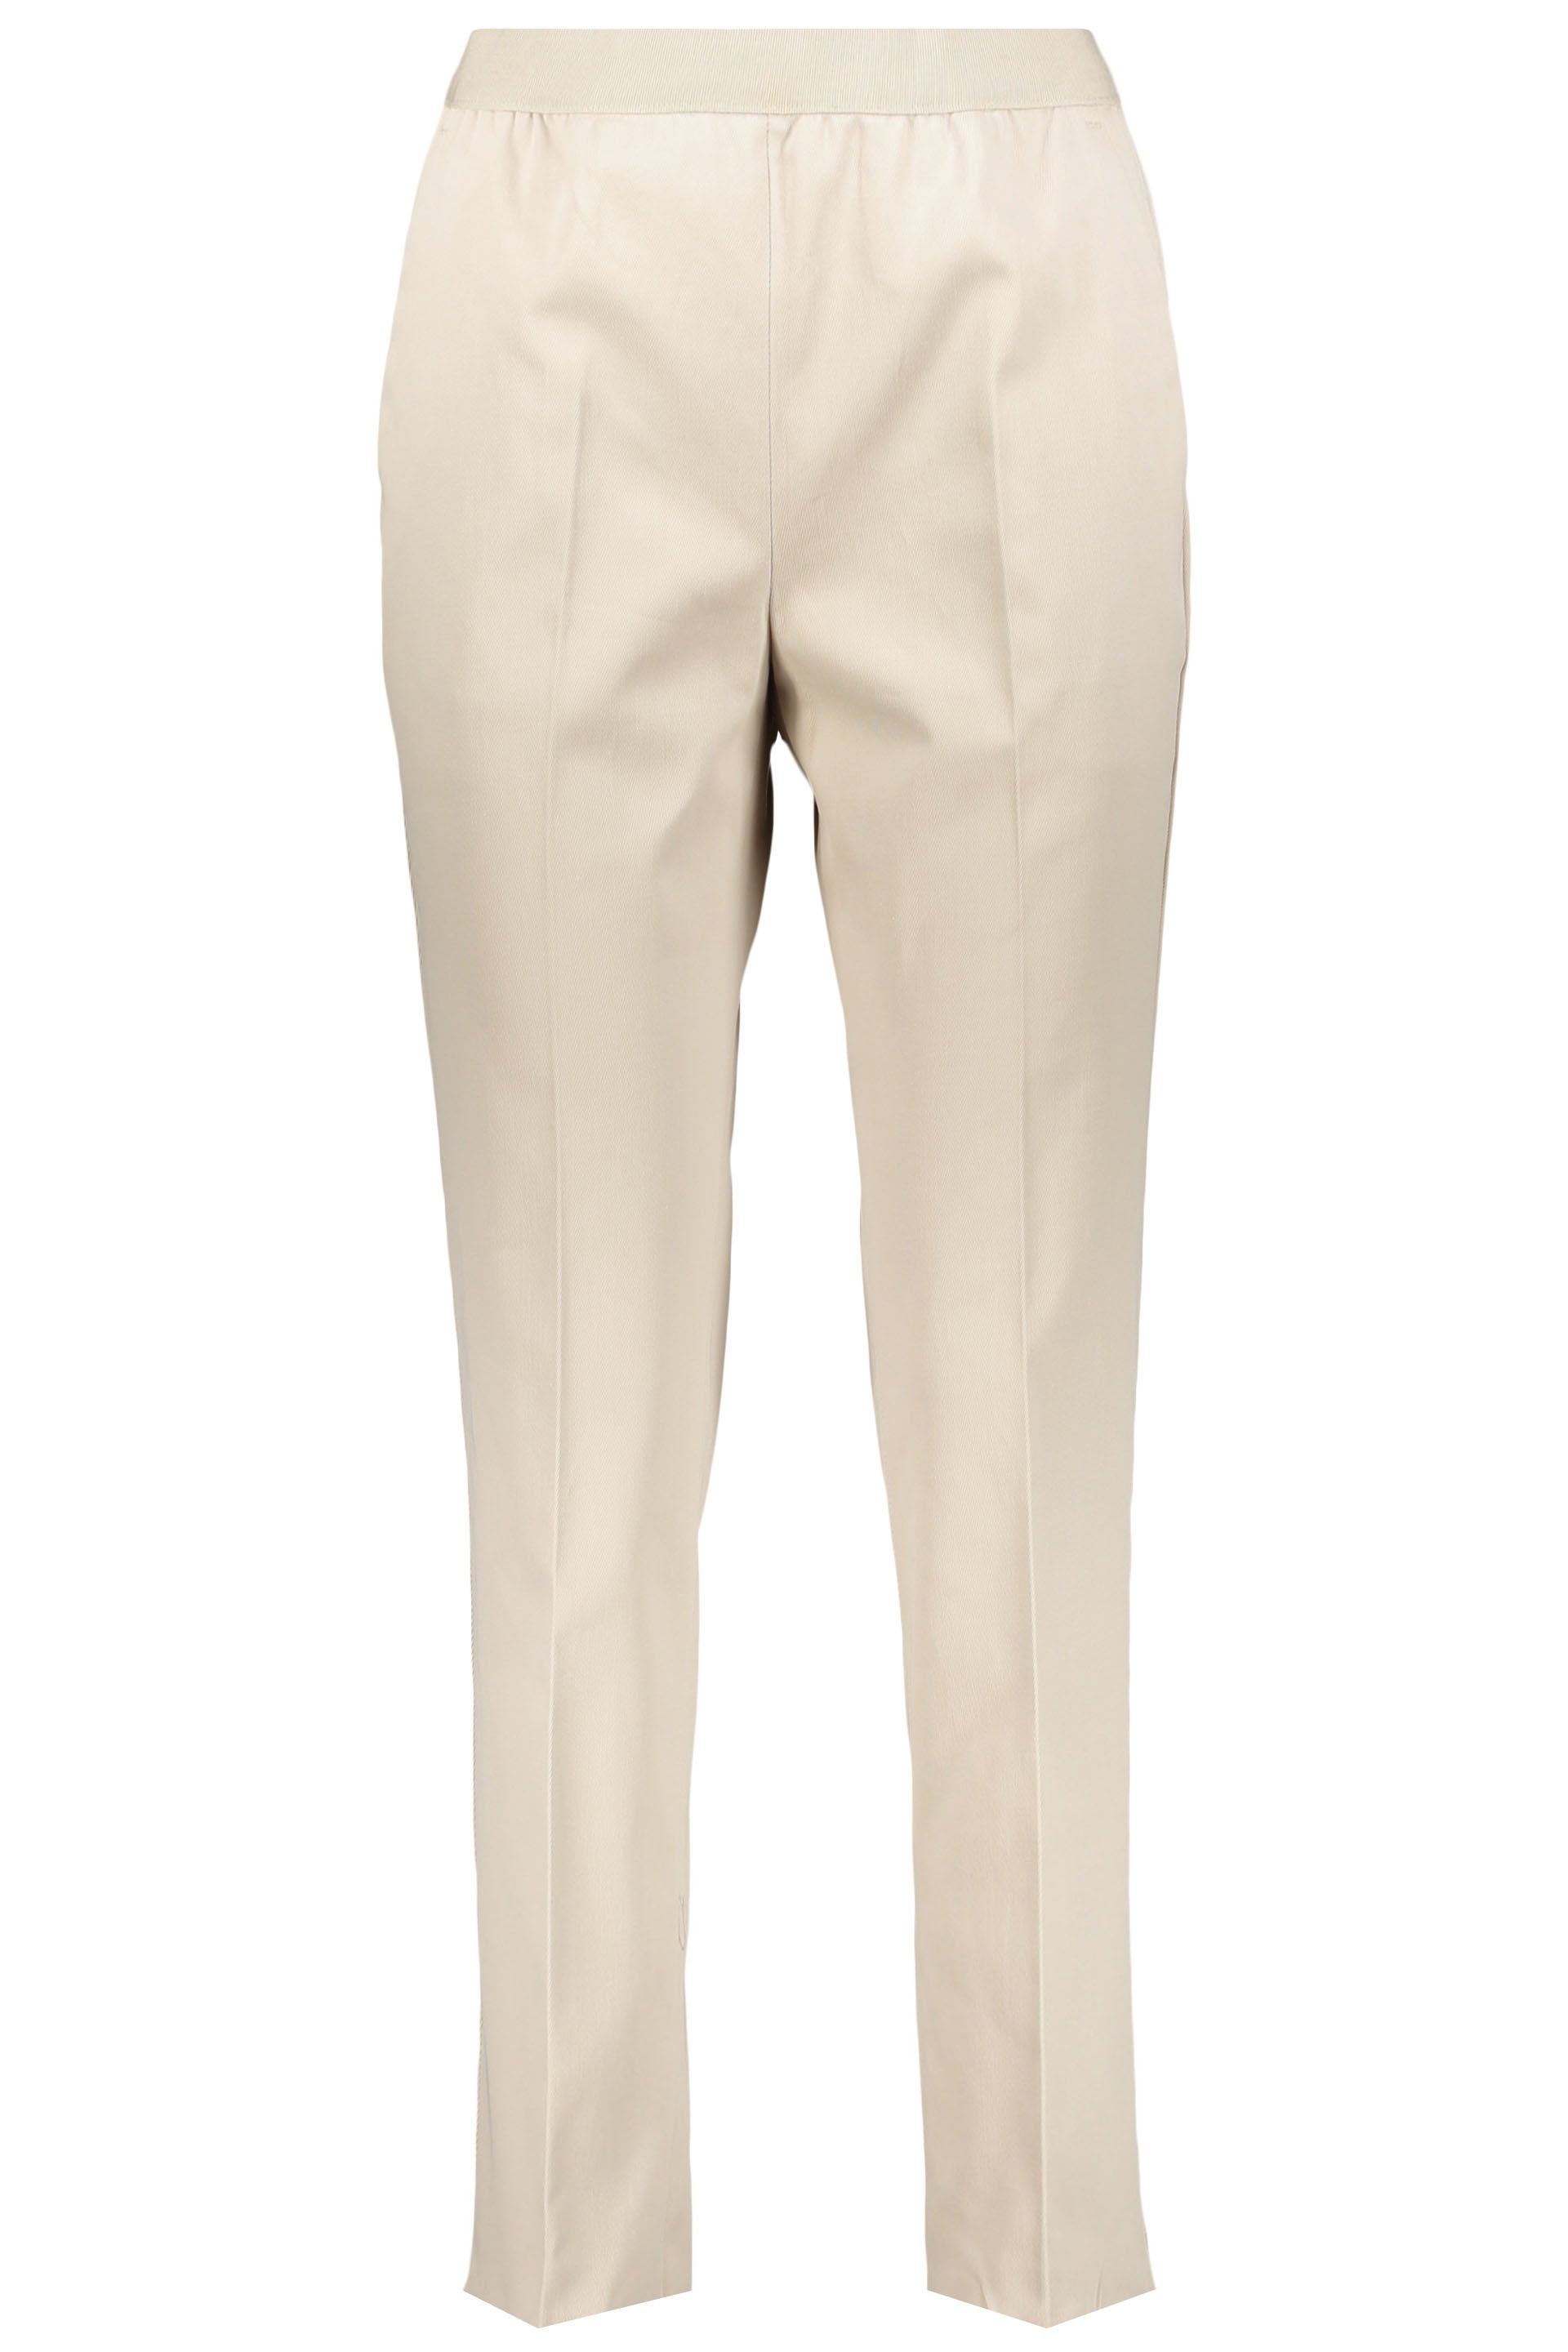 Agnona-OUTLET-SALE-Cotton-trousers-Hosen-38-ARCHIVE-COLLECTION_c04f6138-9bf5-4548-974c-c31c085402f2.jpg